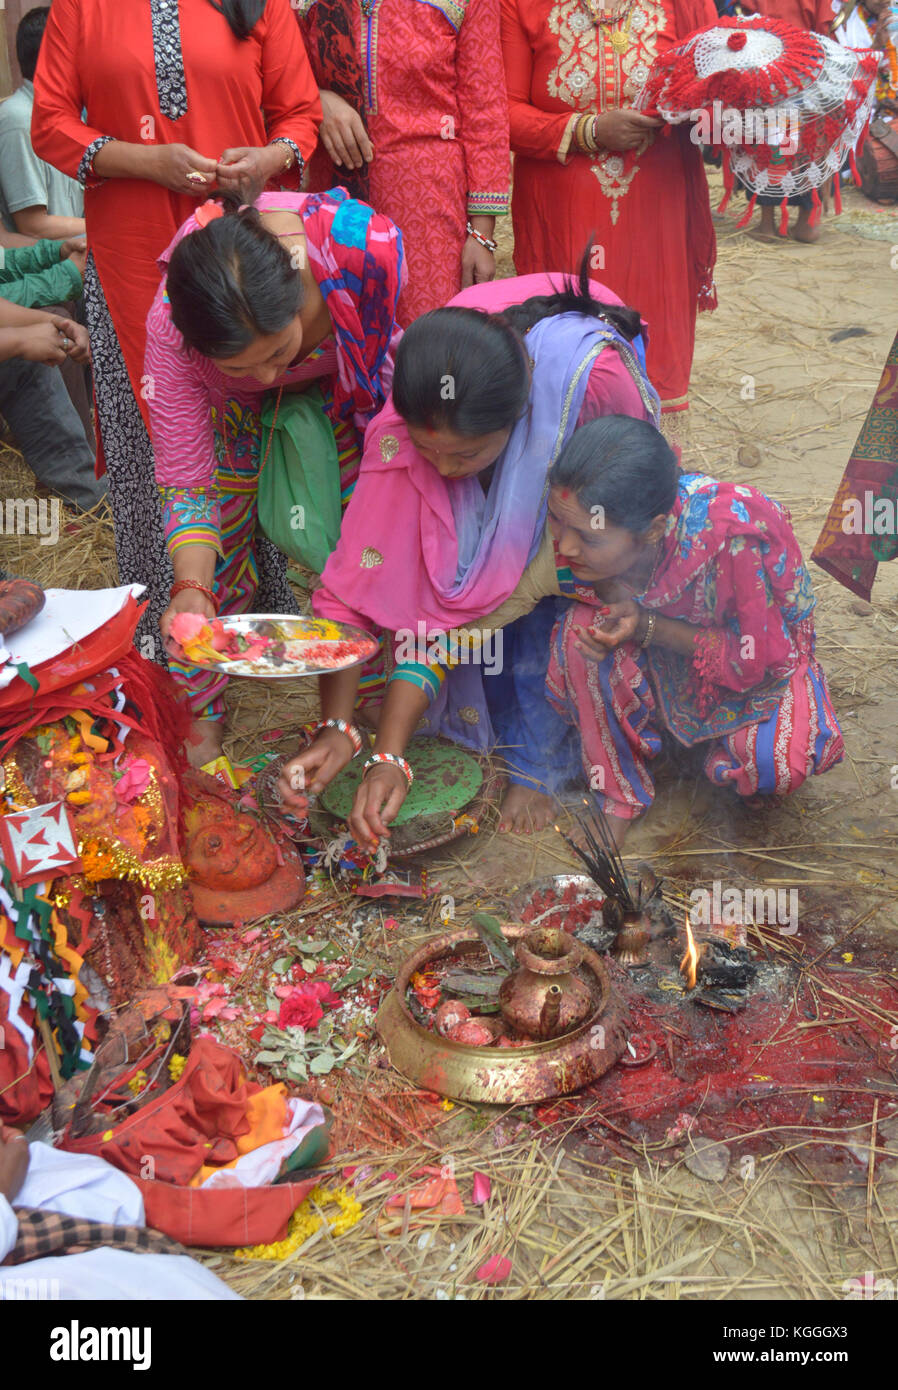 Las mujeres nepalesas están esperando en fila para ofrecer incentivos y comida a los dioses durante el festival de Jatra en Panauti, Nepal. Sangre del sacrificio animal. Foto de stock